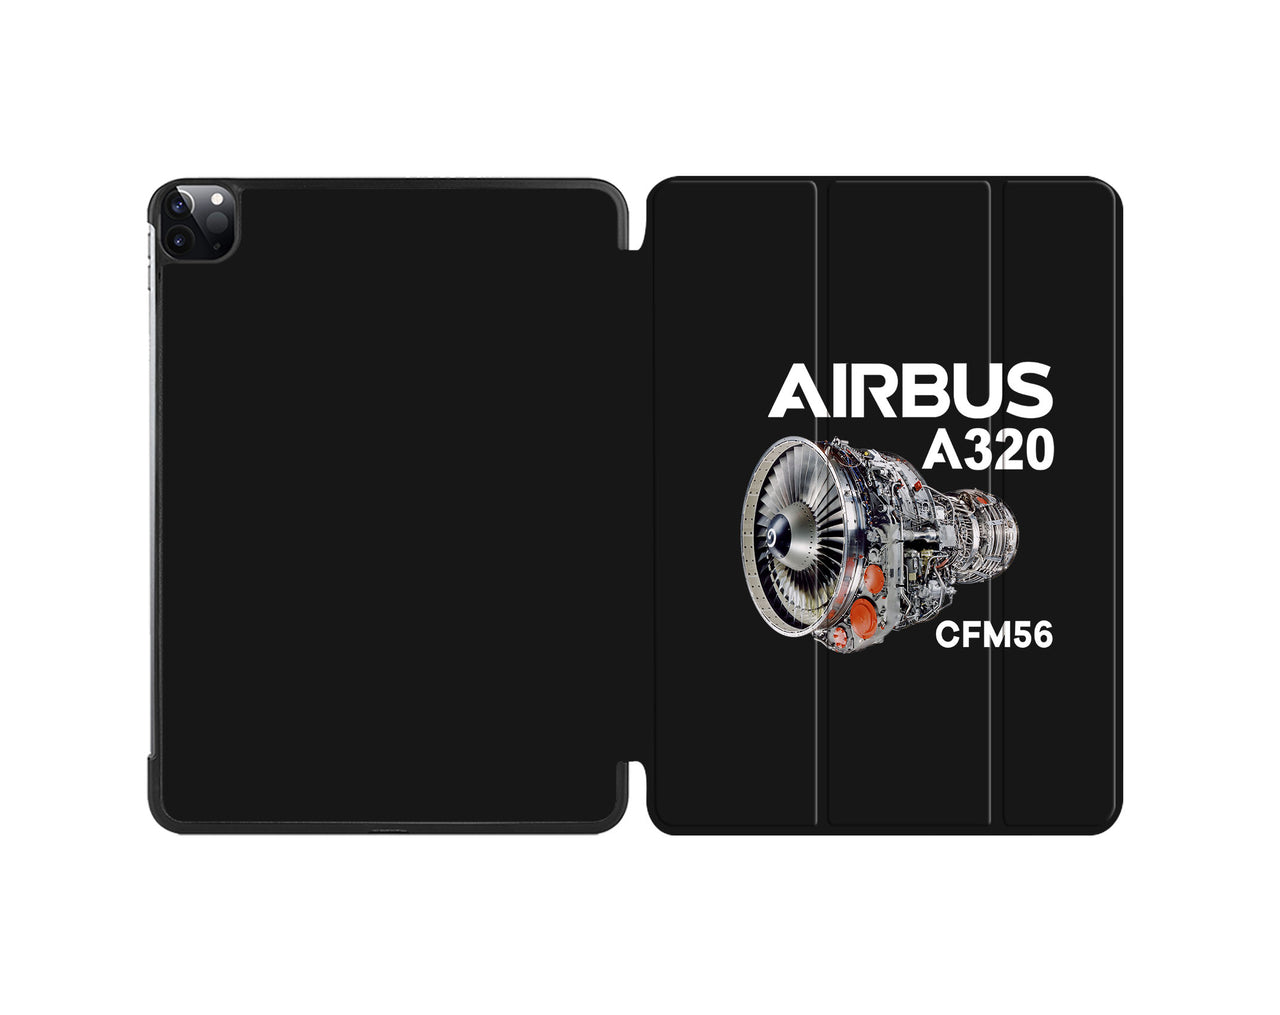 Airbus A320 & CFM56 Engine Designed iPad Cases